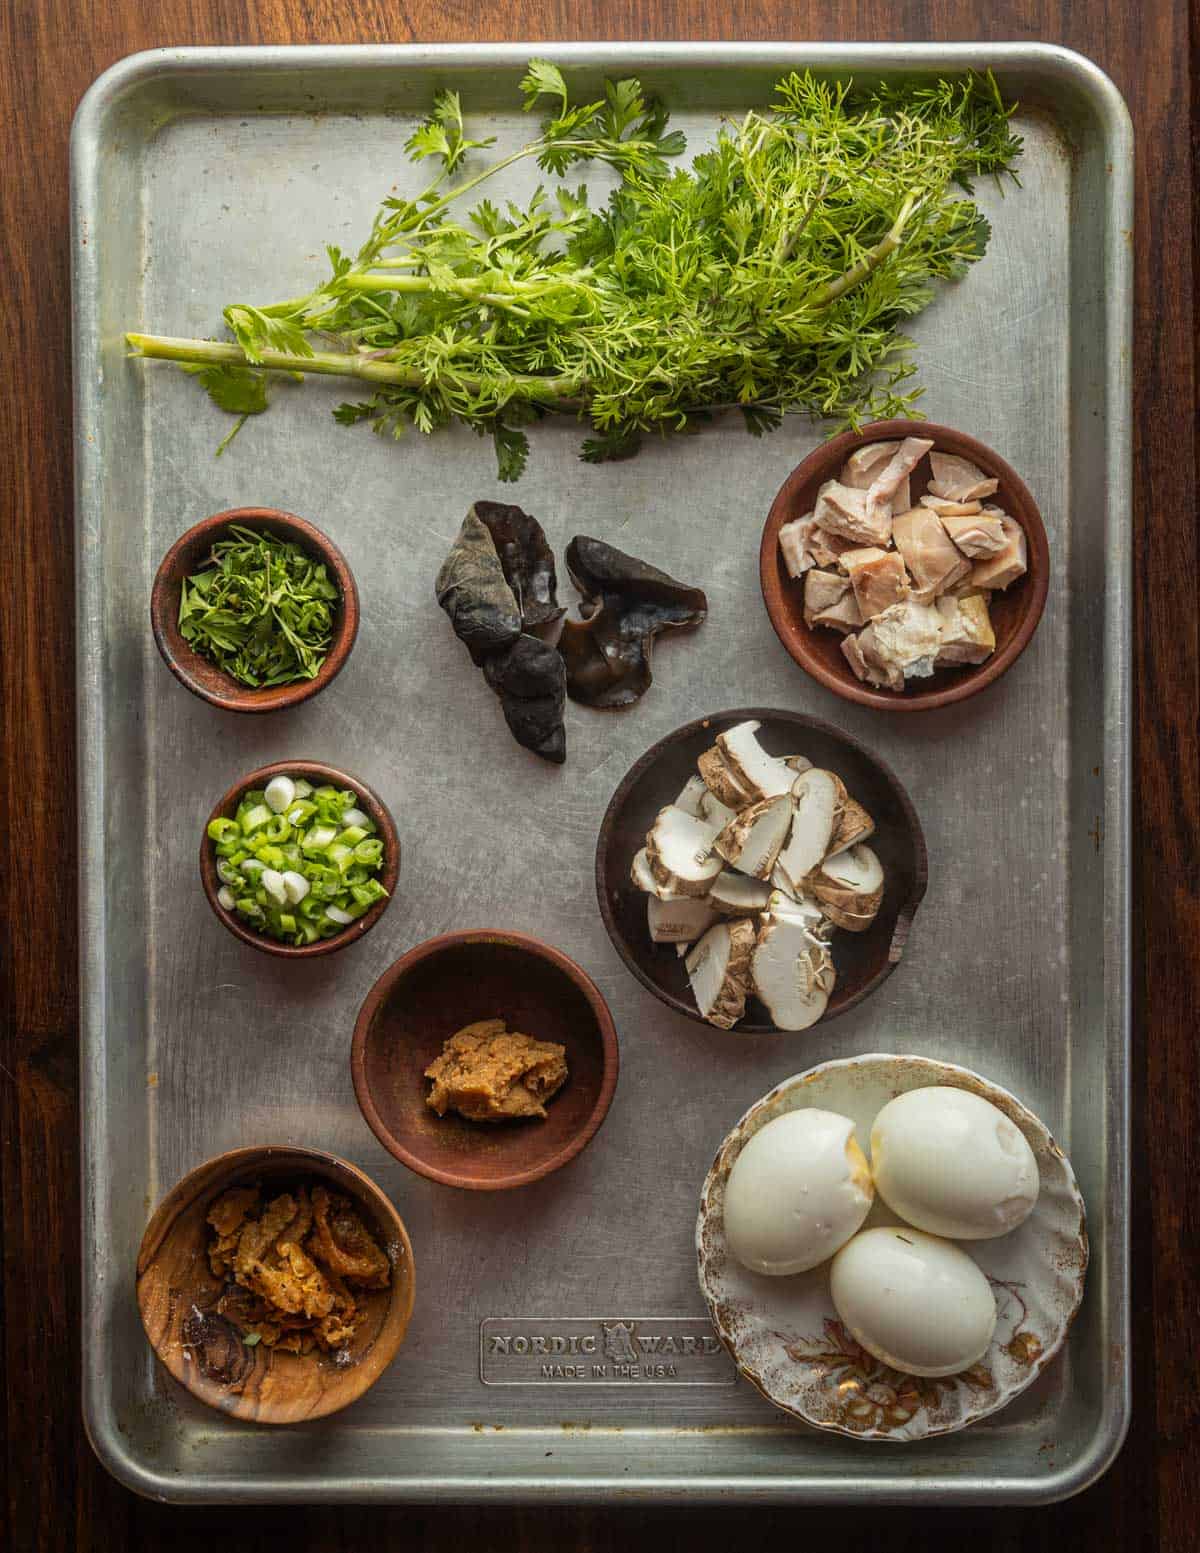 Wood ear ramen ingredients: cilantro, soft eggs, miso, chicken skin, mushrooms, chicken, scallions.